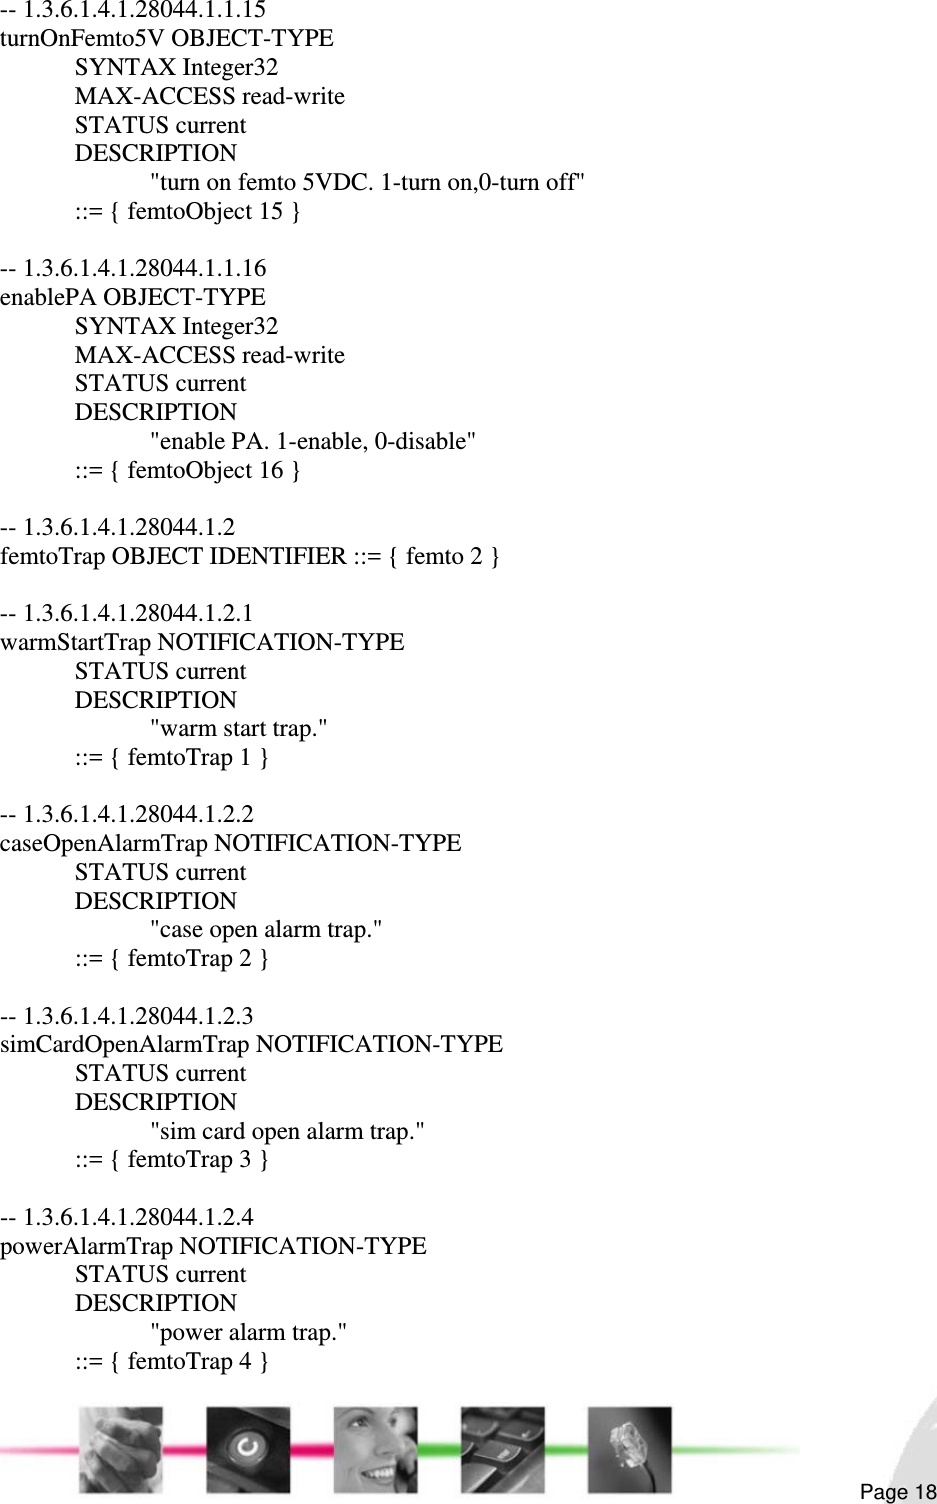                                                                                                                                                                                                        Page 18 -- 1.3.6.1.4.1.28044.1.1.15 turnOnFemto5V OBJECT-TYPE  SYNTAX Integer32  MAX-ACCESS read-write  STATUS current  DESCRIPTION     &quot;turn on femto 5VDC. 1-turn on,0-turn off&quot;   ::= { femtoObject 15 }  -- 1.3.6.1.4.1.28044.1.1.16 enablePA OBJECT-TYPE  SYNTAX Integer32  MAX-ACCESS read-write  STATUS current  DESCRIPTION     &quot;enable PA. 1-enable, 0-disable&quot;   ::= { femtoObject 16 }  -- 1.3.6.1.4.1.28044.1.2 femtoTrap OBJECT IDENTIFIER ::= { femto 2 }  -- 1.3.6.1.4.1.28044.1.2.1 warmStartTrap NOTIFICATION-TYPE  STATUS current  DESCRIPTION    &quot;warm start trap.&quot;   ::= { femtoTrap 1 }  -- 1.3.6.1.4.1.28044.1.2.2 caseOpenAlarmTrap NOTIFICATION-TYPE  STATUS current  DESCRIPTION    &quot;case open alarm trap.&quot;   ::= { femtoTrap 2 }  -- 1.3.6.1.4.1.28044.1.2.3 simCardOpenAlarmTrap NOTIFICATION-TYPE  STATUS current  DESCRIPTION      &quot;sim card open alarm trap.&quot;   ::= { femtoTrap 3 }  -- 1.3.6.1.4.1.28044.1.2.4 powerAlarmTrap NOTIFICATION-TYPE  STATUS current  DESCRIPTION    &quot;power alarm trap.&quot;   ::= { femtoTrap 4 } 